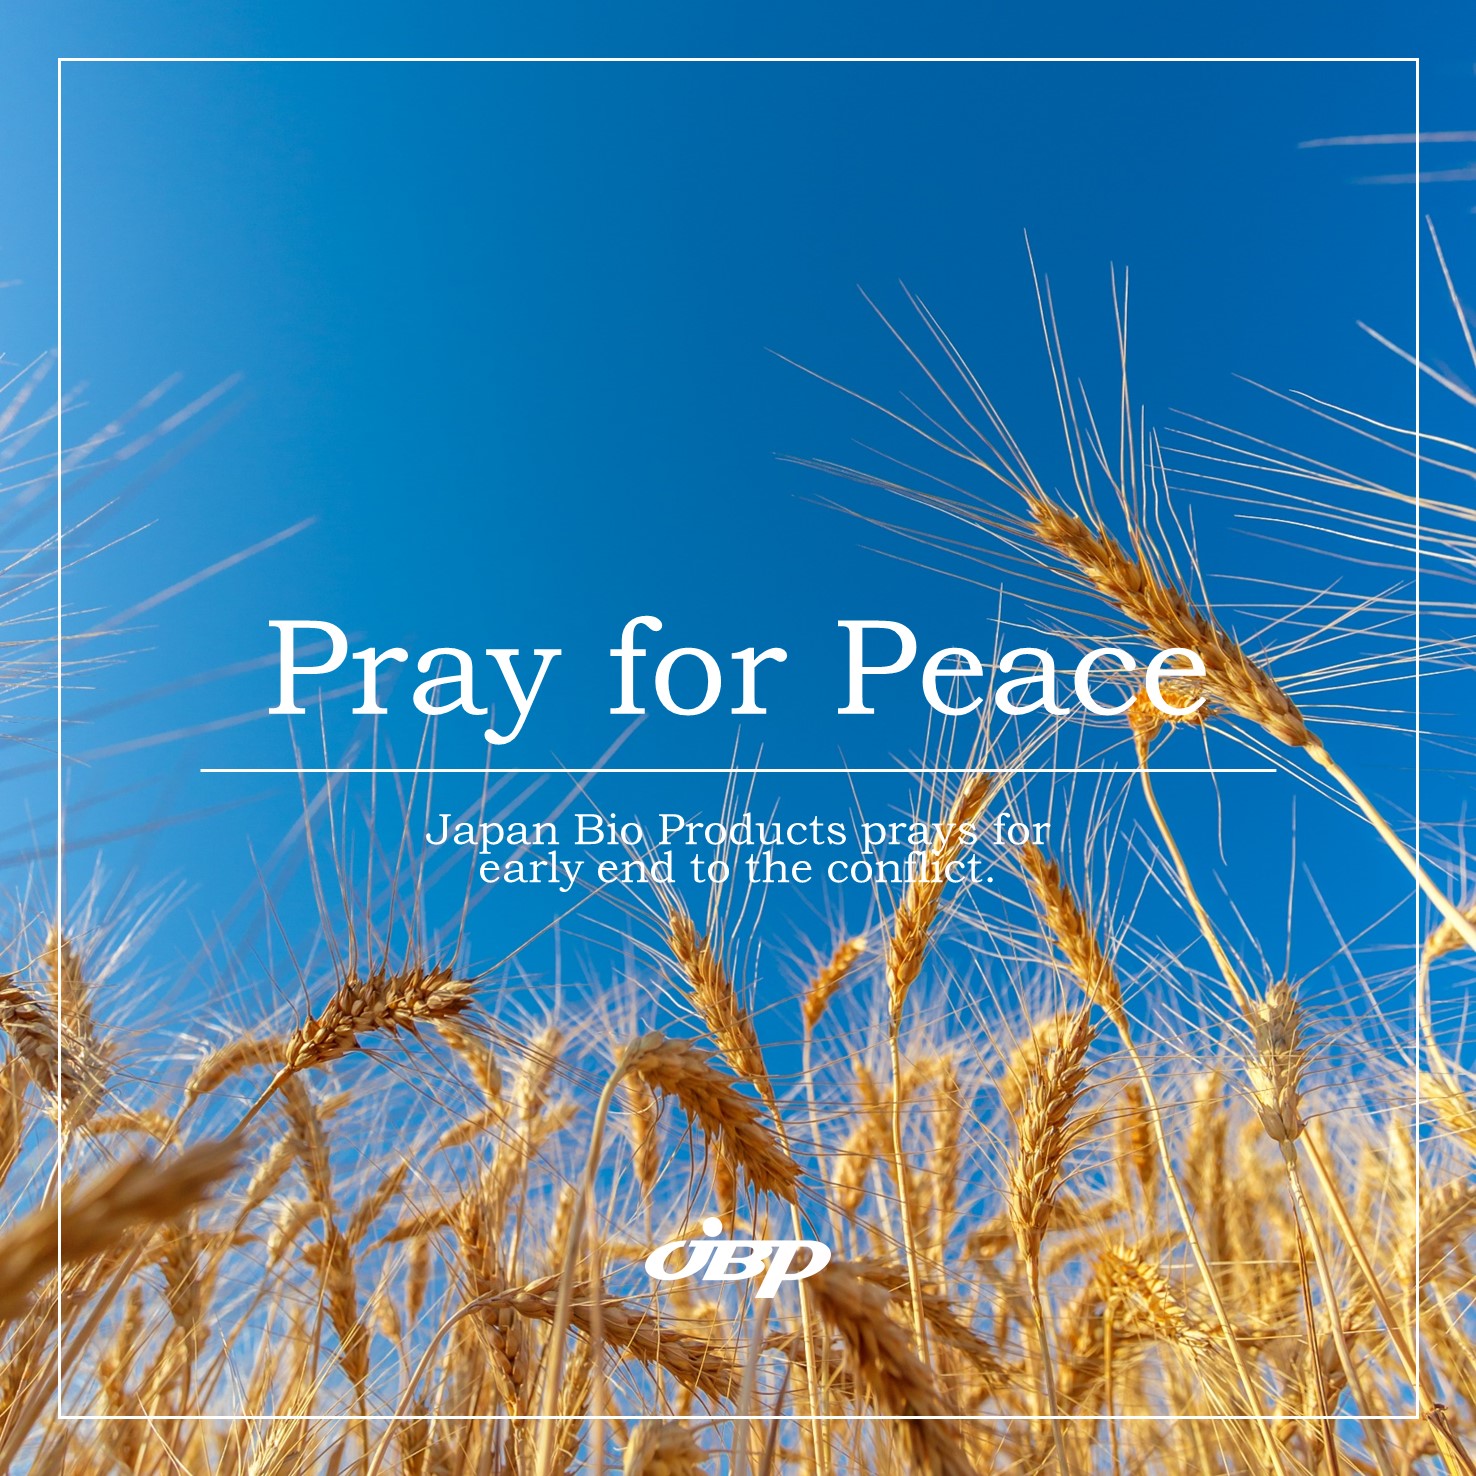 Ukraine - pray for peace v3